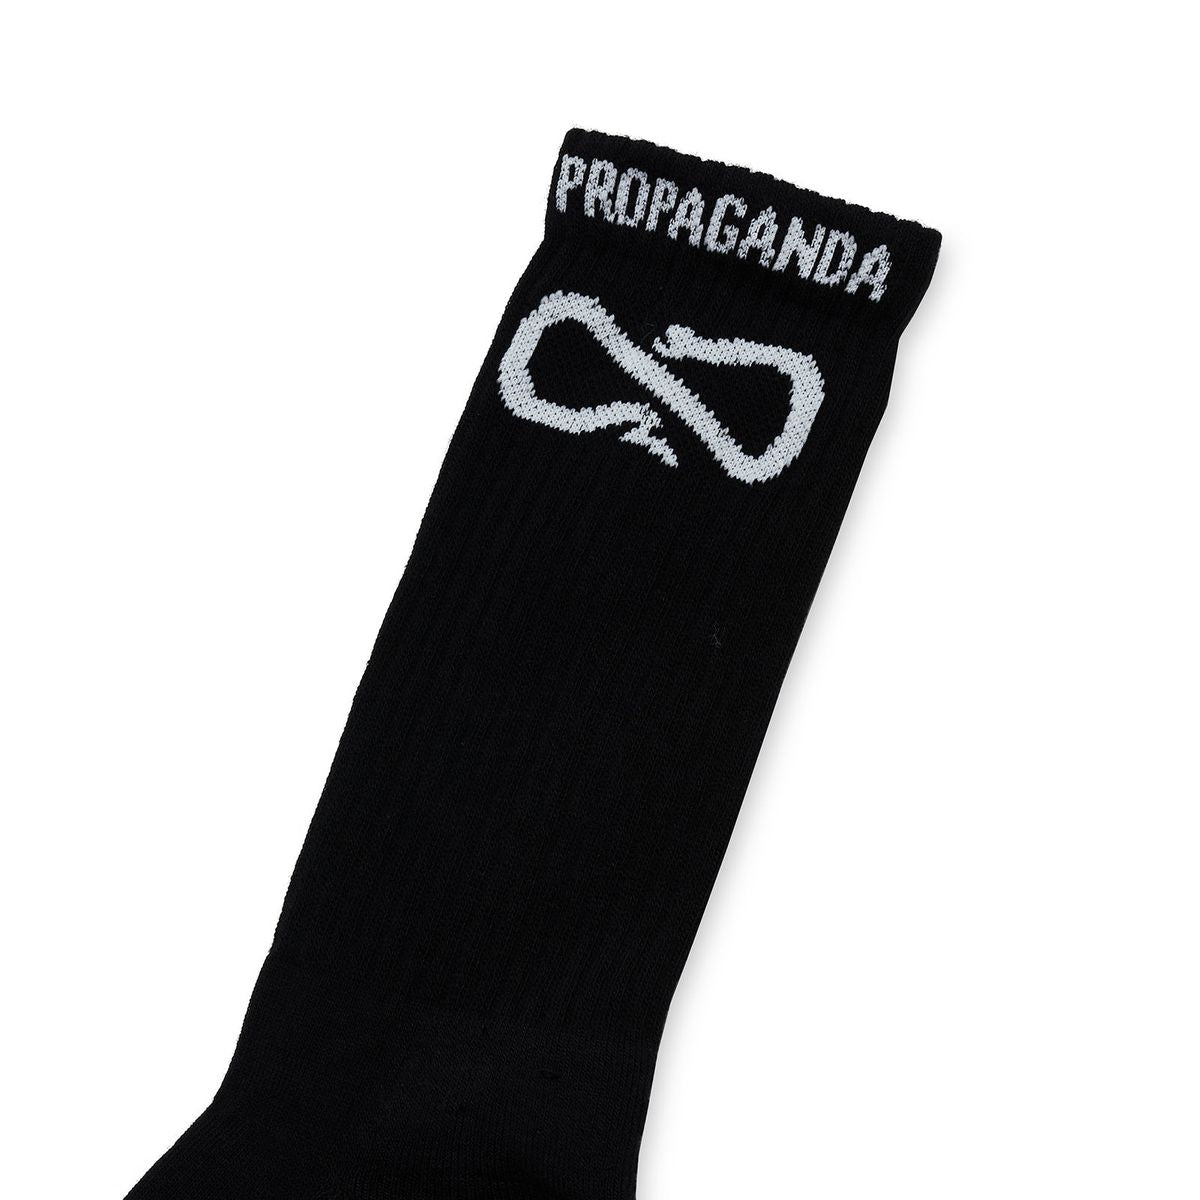 21FWPRAC666 - Socks - Propaganda